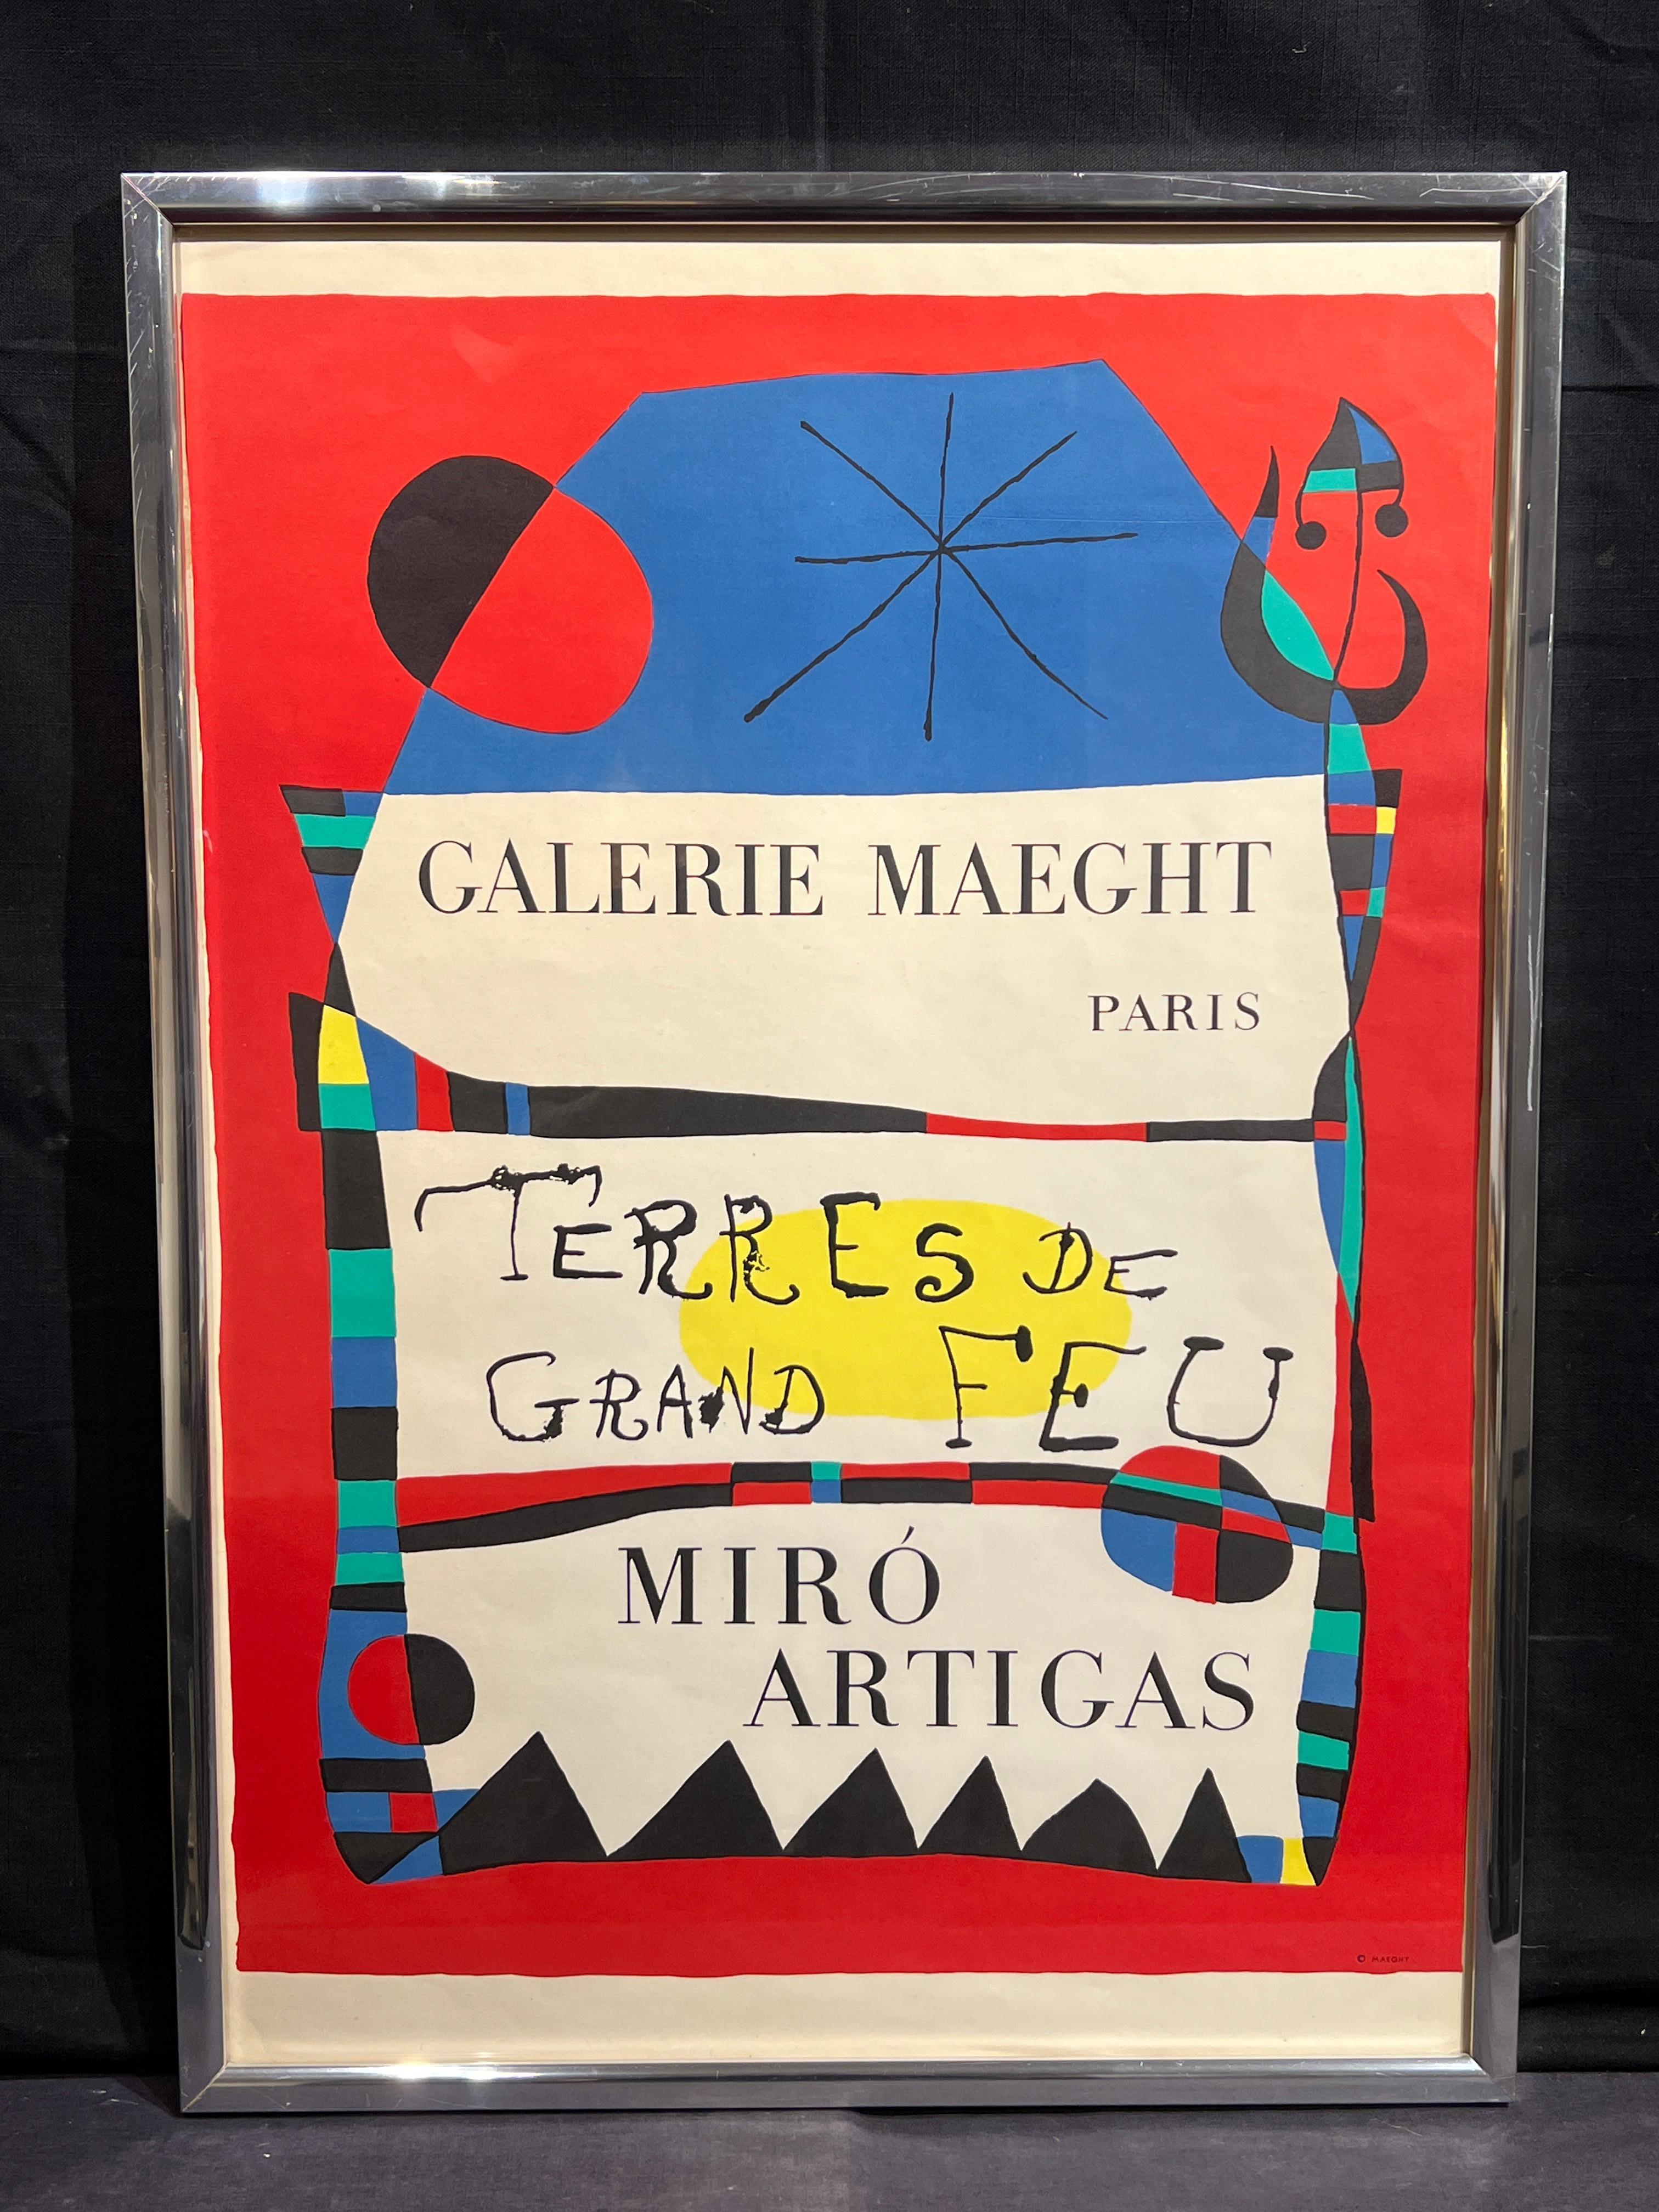 Terres de Grand Feu
Miro Artigas
Galerie Maeght Affiche d'art imprimée
30 x 21 pouces
31 x 22 pouces avec cadre

Joan Miro (espagnol, 1893-1983)

Joan Miro est né à Barcelone, en Espagne, le 20 avril 1893, fils d'un horloger. À partir de 1912, il